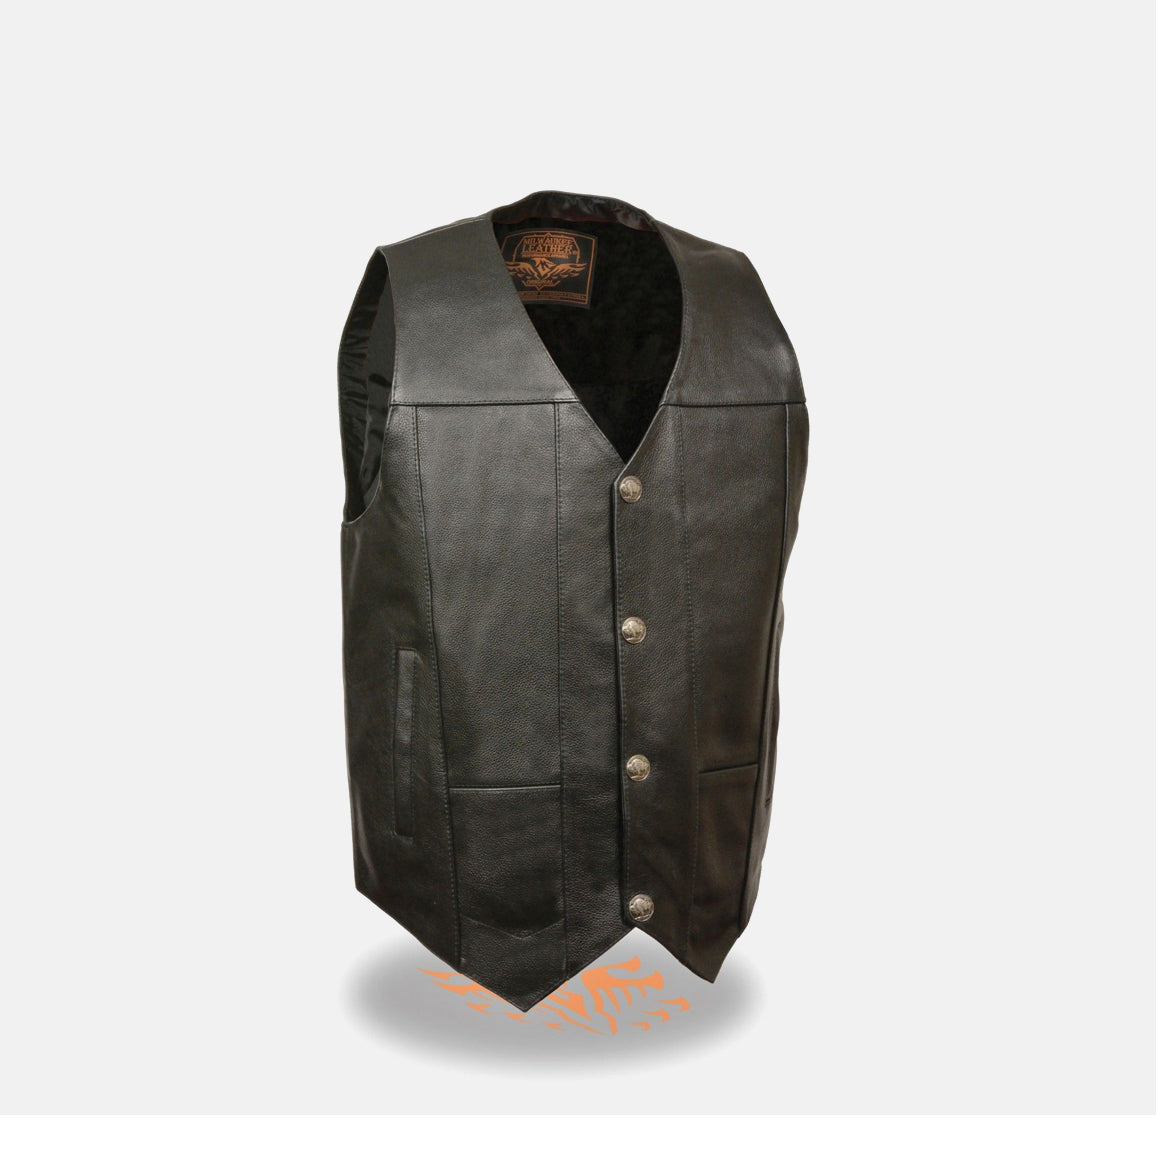 Black Leather Vest for Men